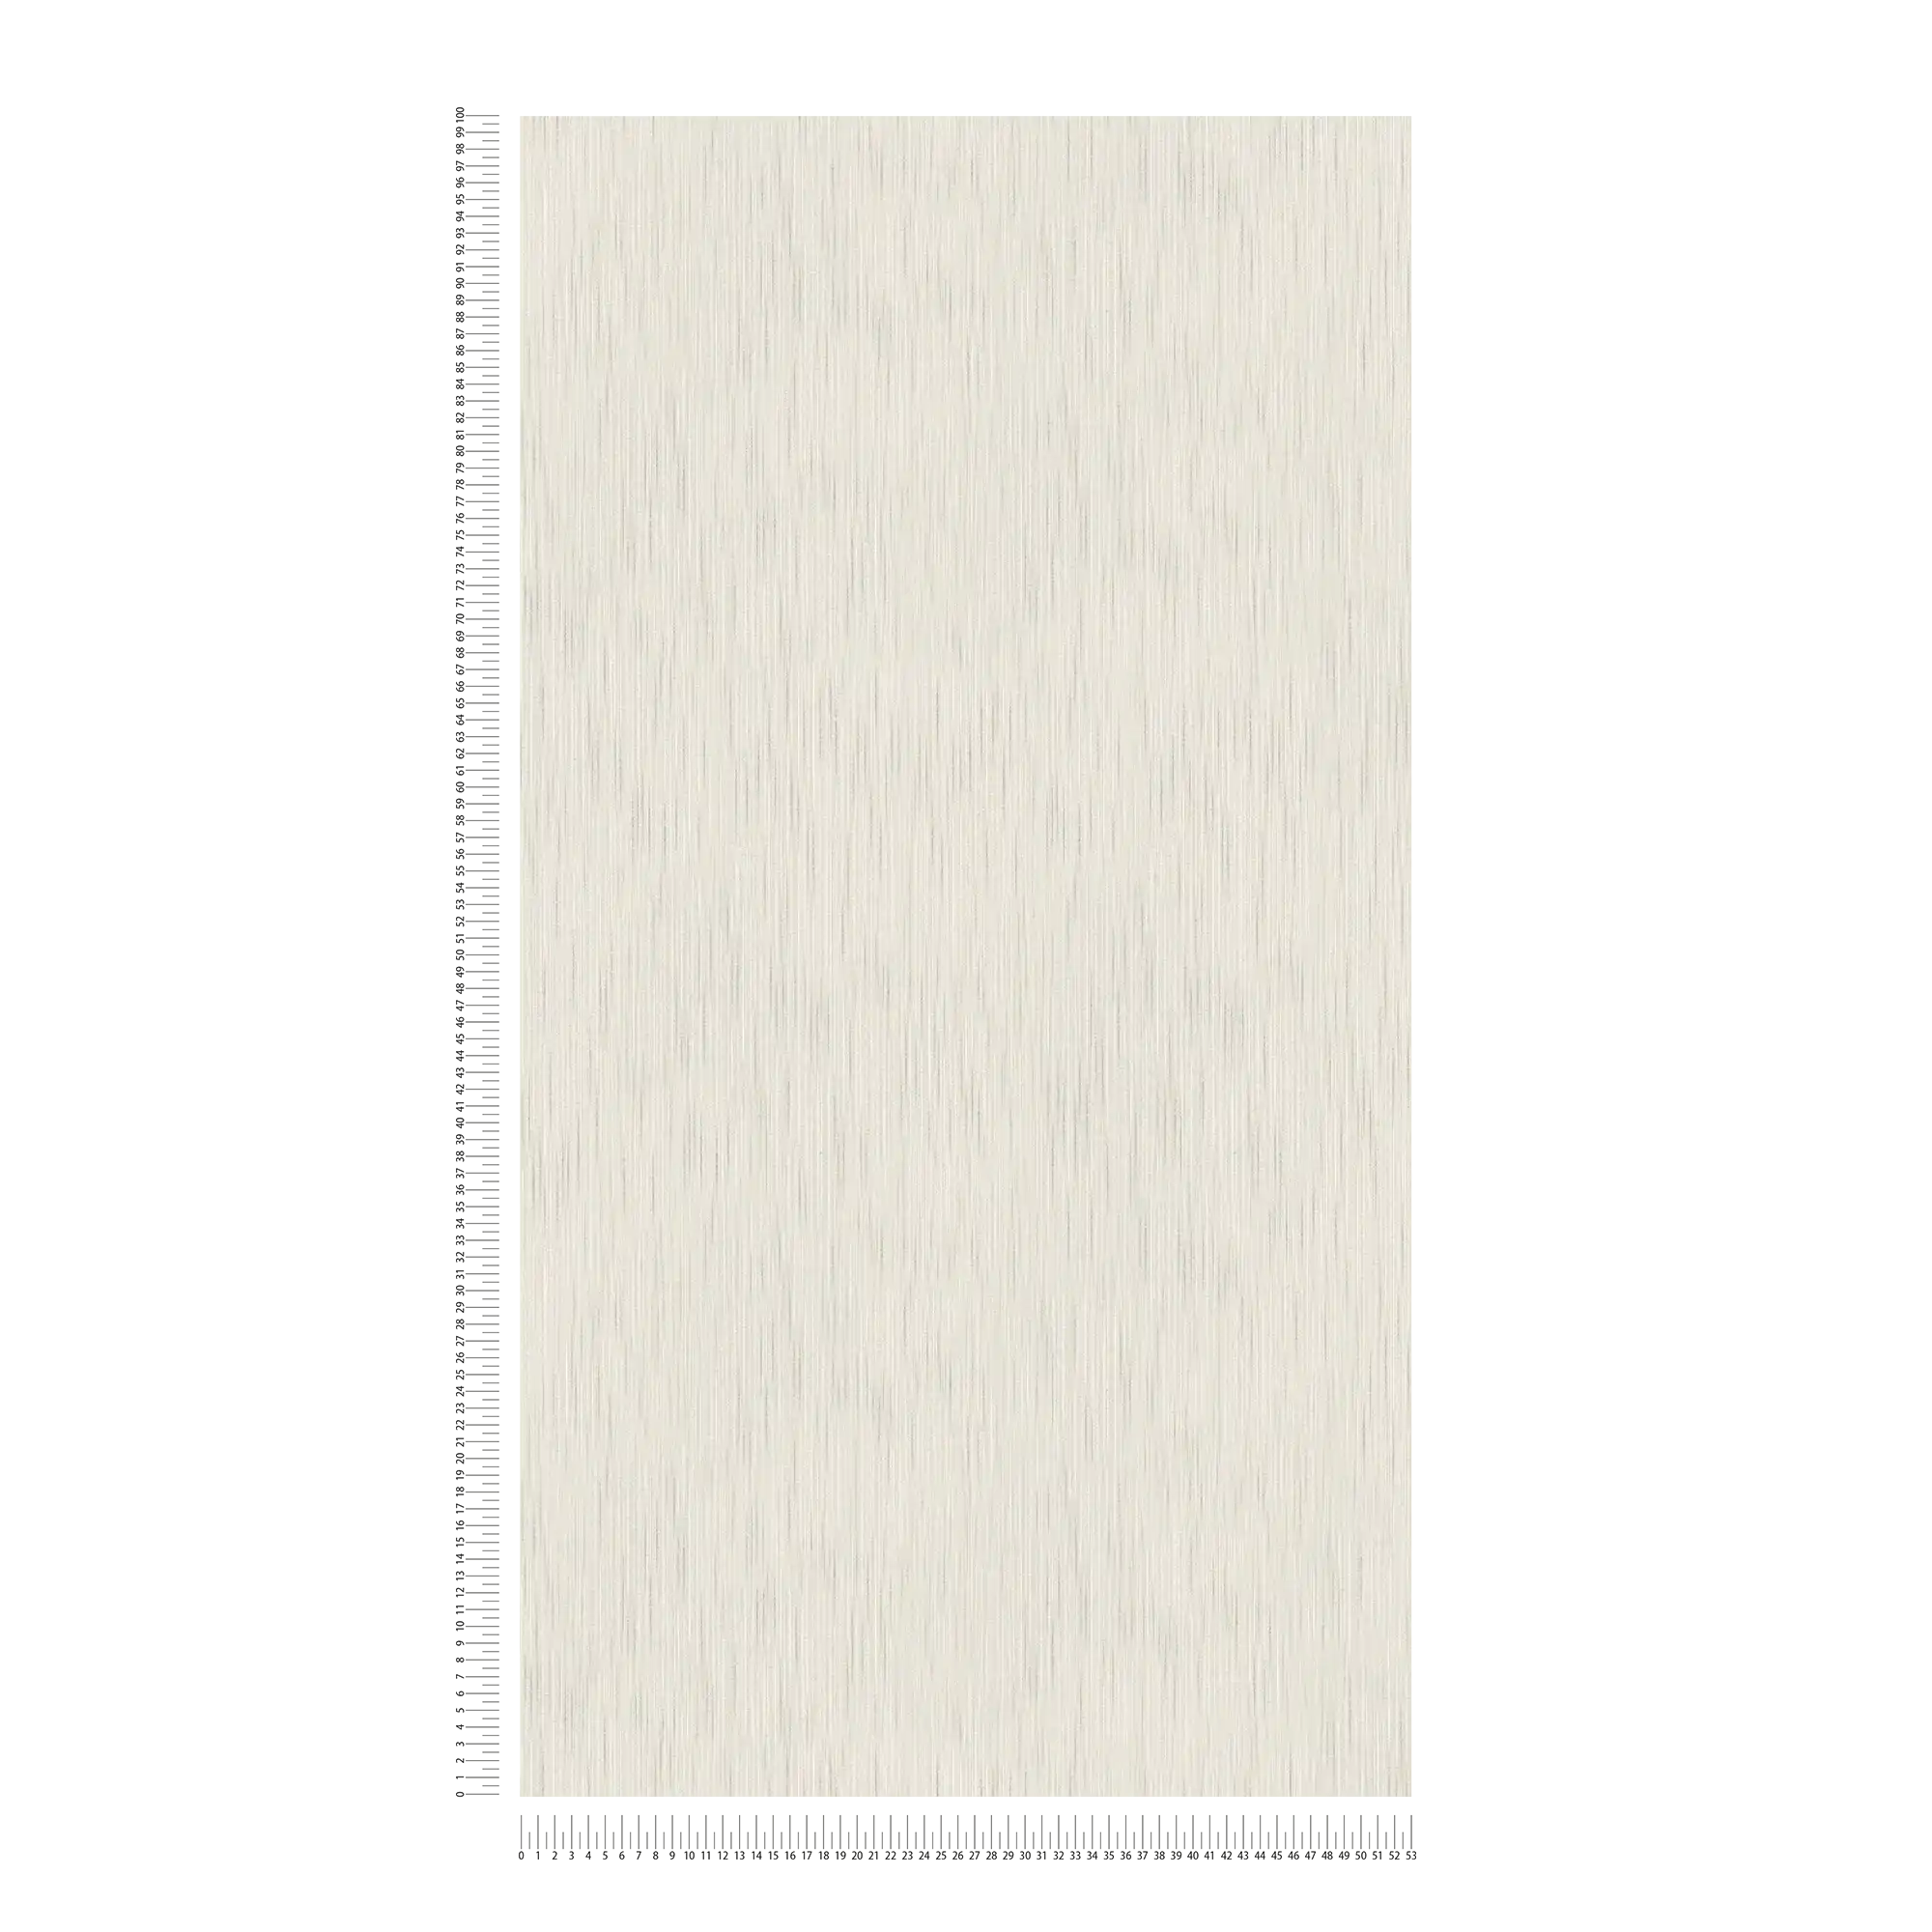             Papel pintado satinado gris claro con estructura textil y efecto moteado
        